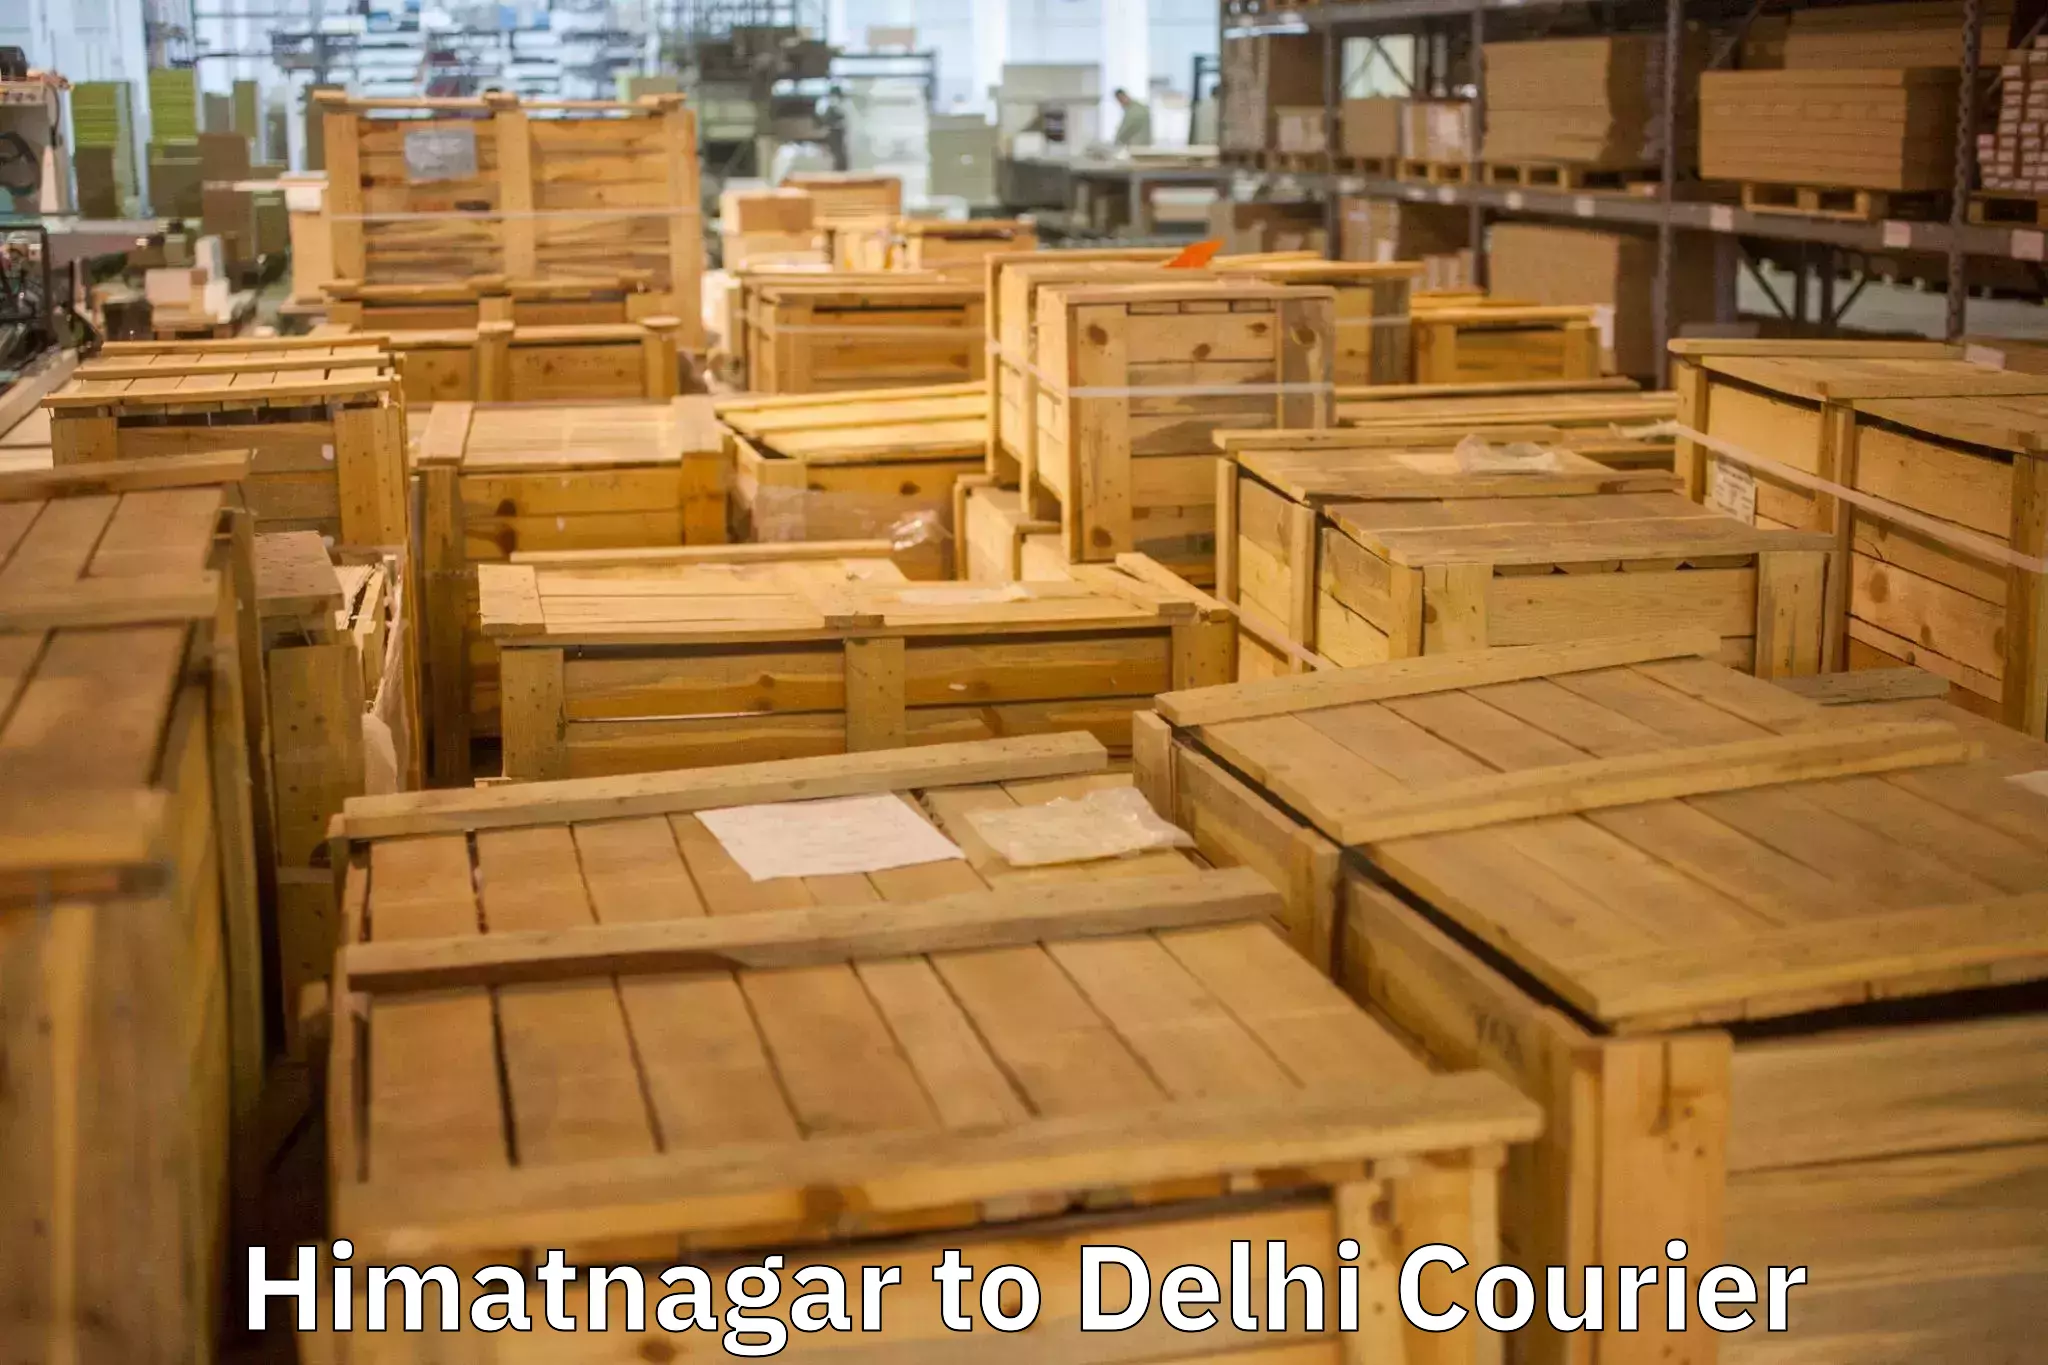 Reliable moving solutions Himatnagar to IIT Delhi